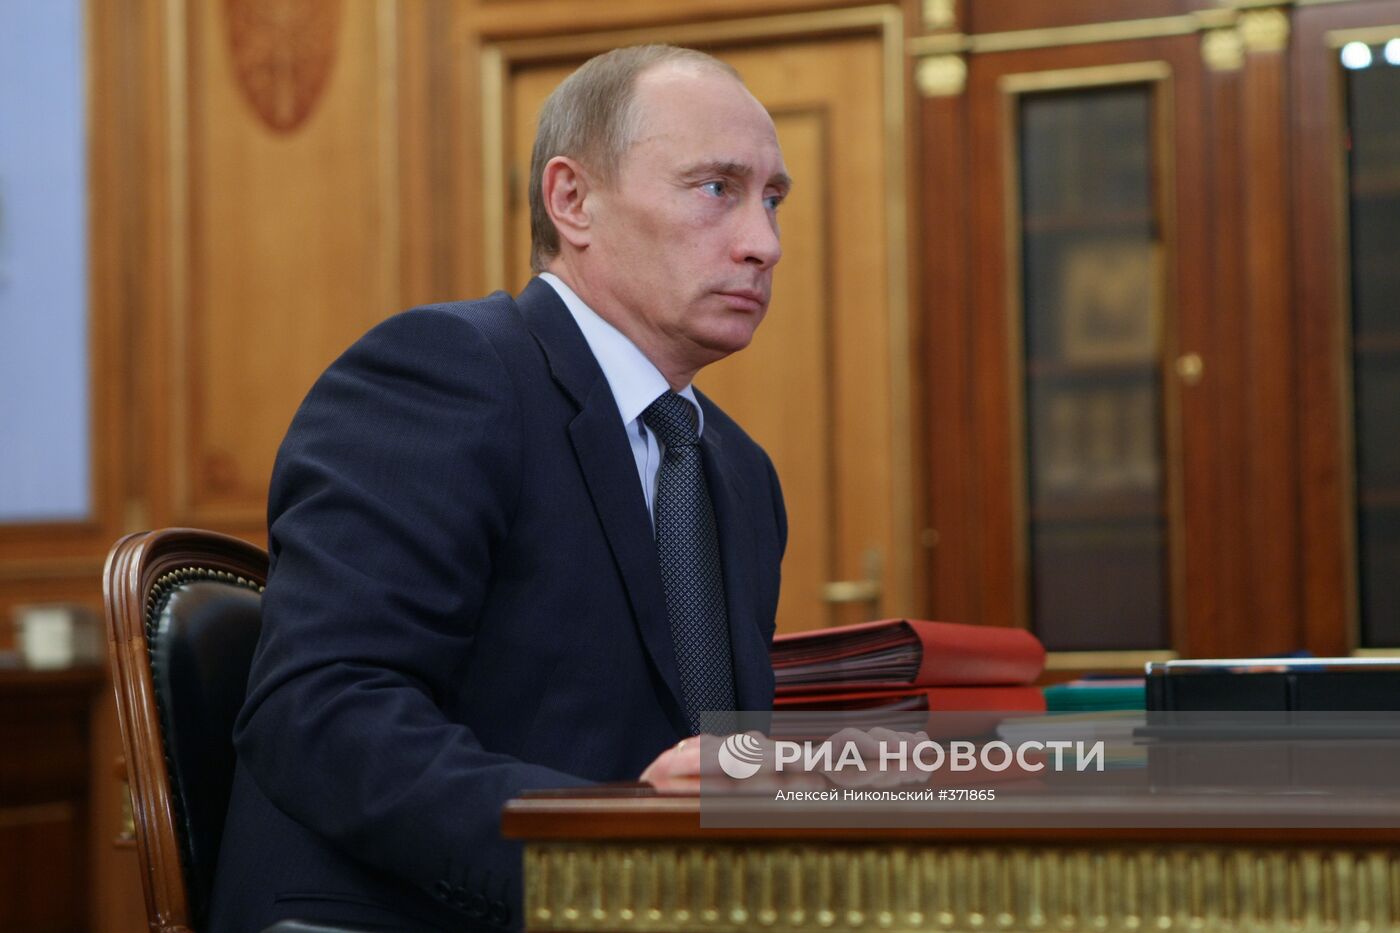 Встреча В. Путина с Г. Боосом